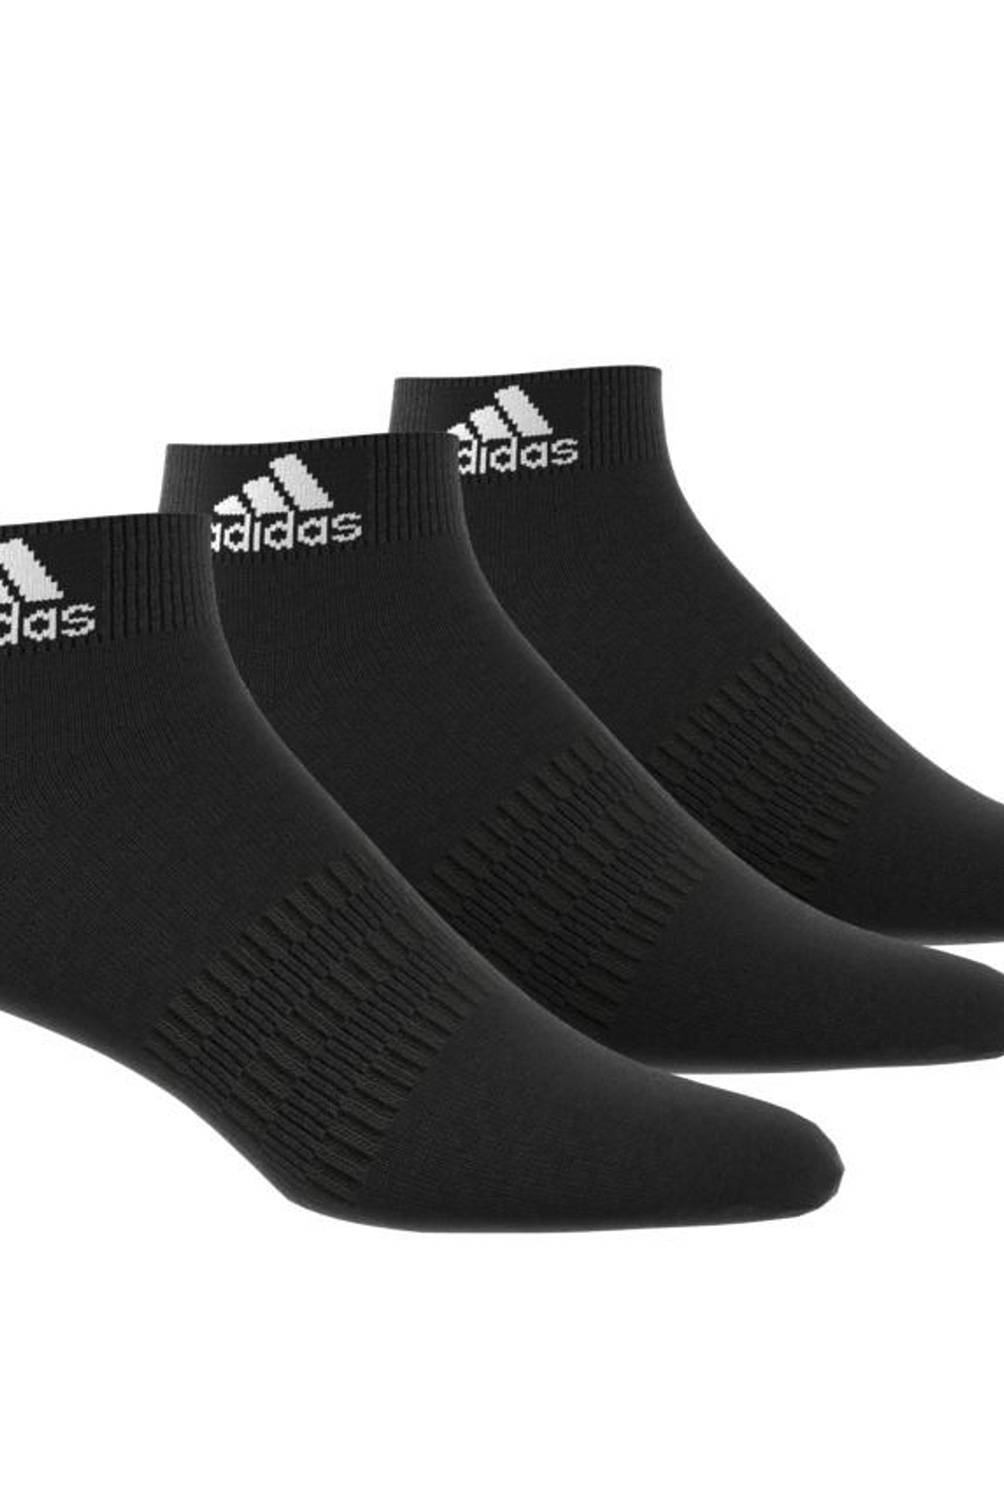 ADIDAS - Adidas Pack De 3 Calcetines Cortos Deportivos